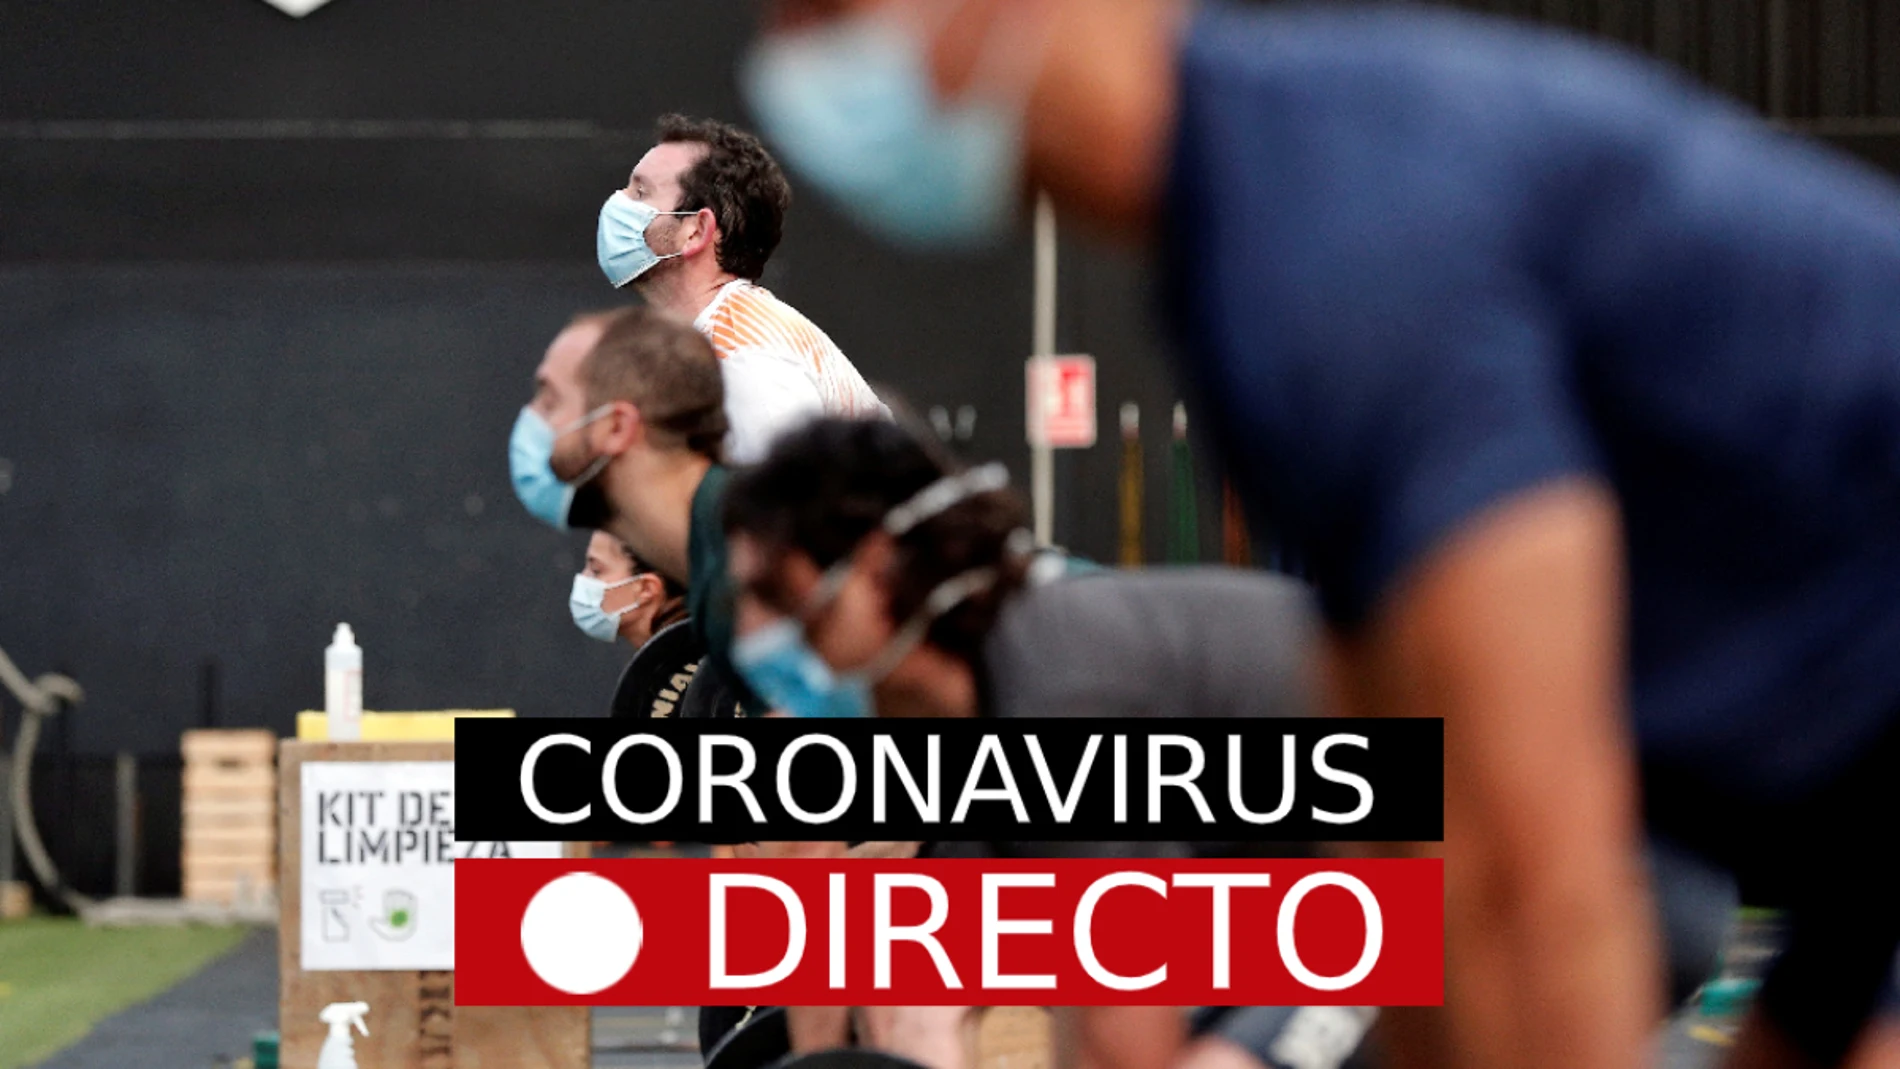 Coronavirus España hoy | Casos, muertos, estado de alarma y noticias de última hora, en directo